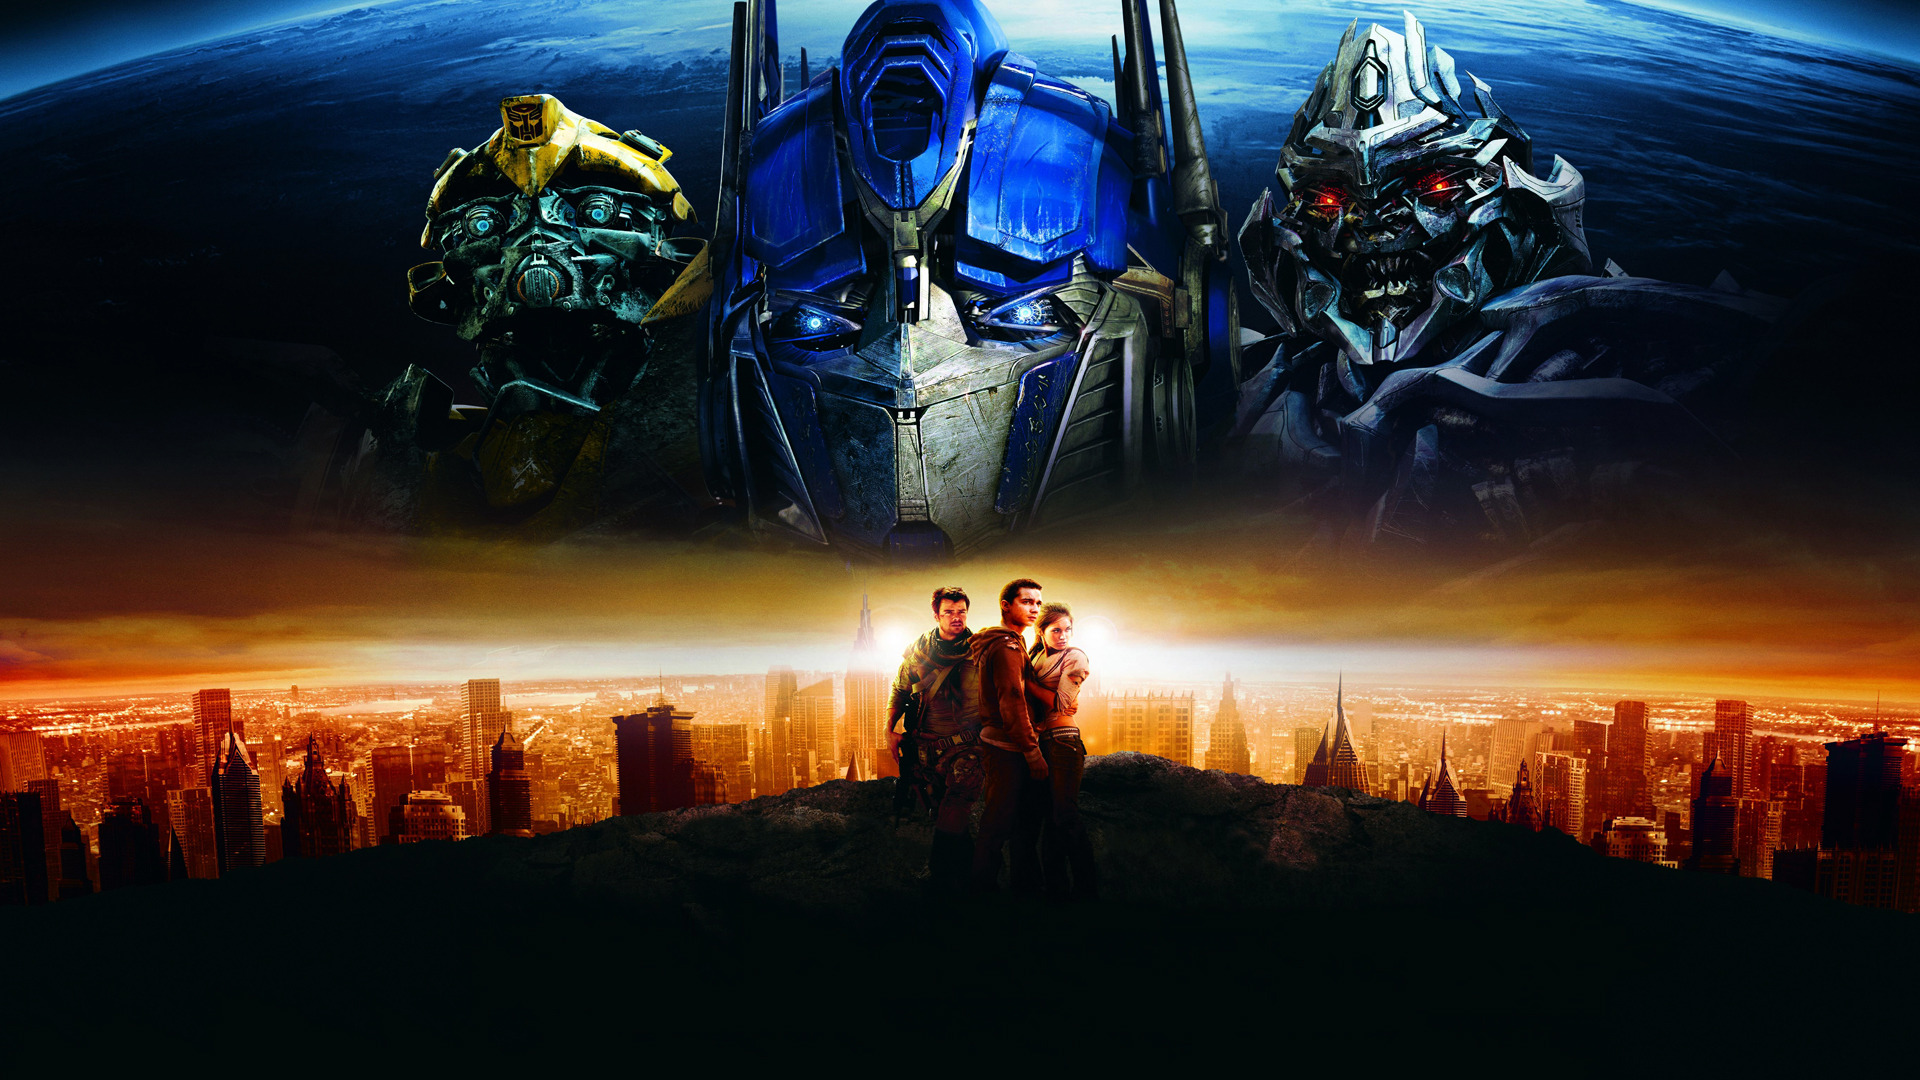 Transformers HD Wallpapers 1080p - WallpaperSafari